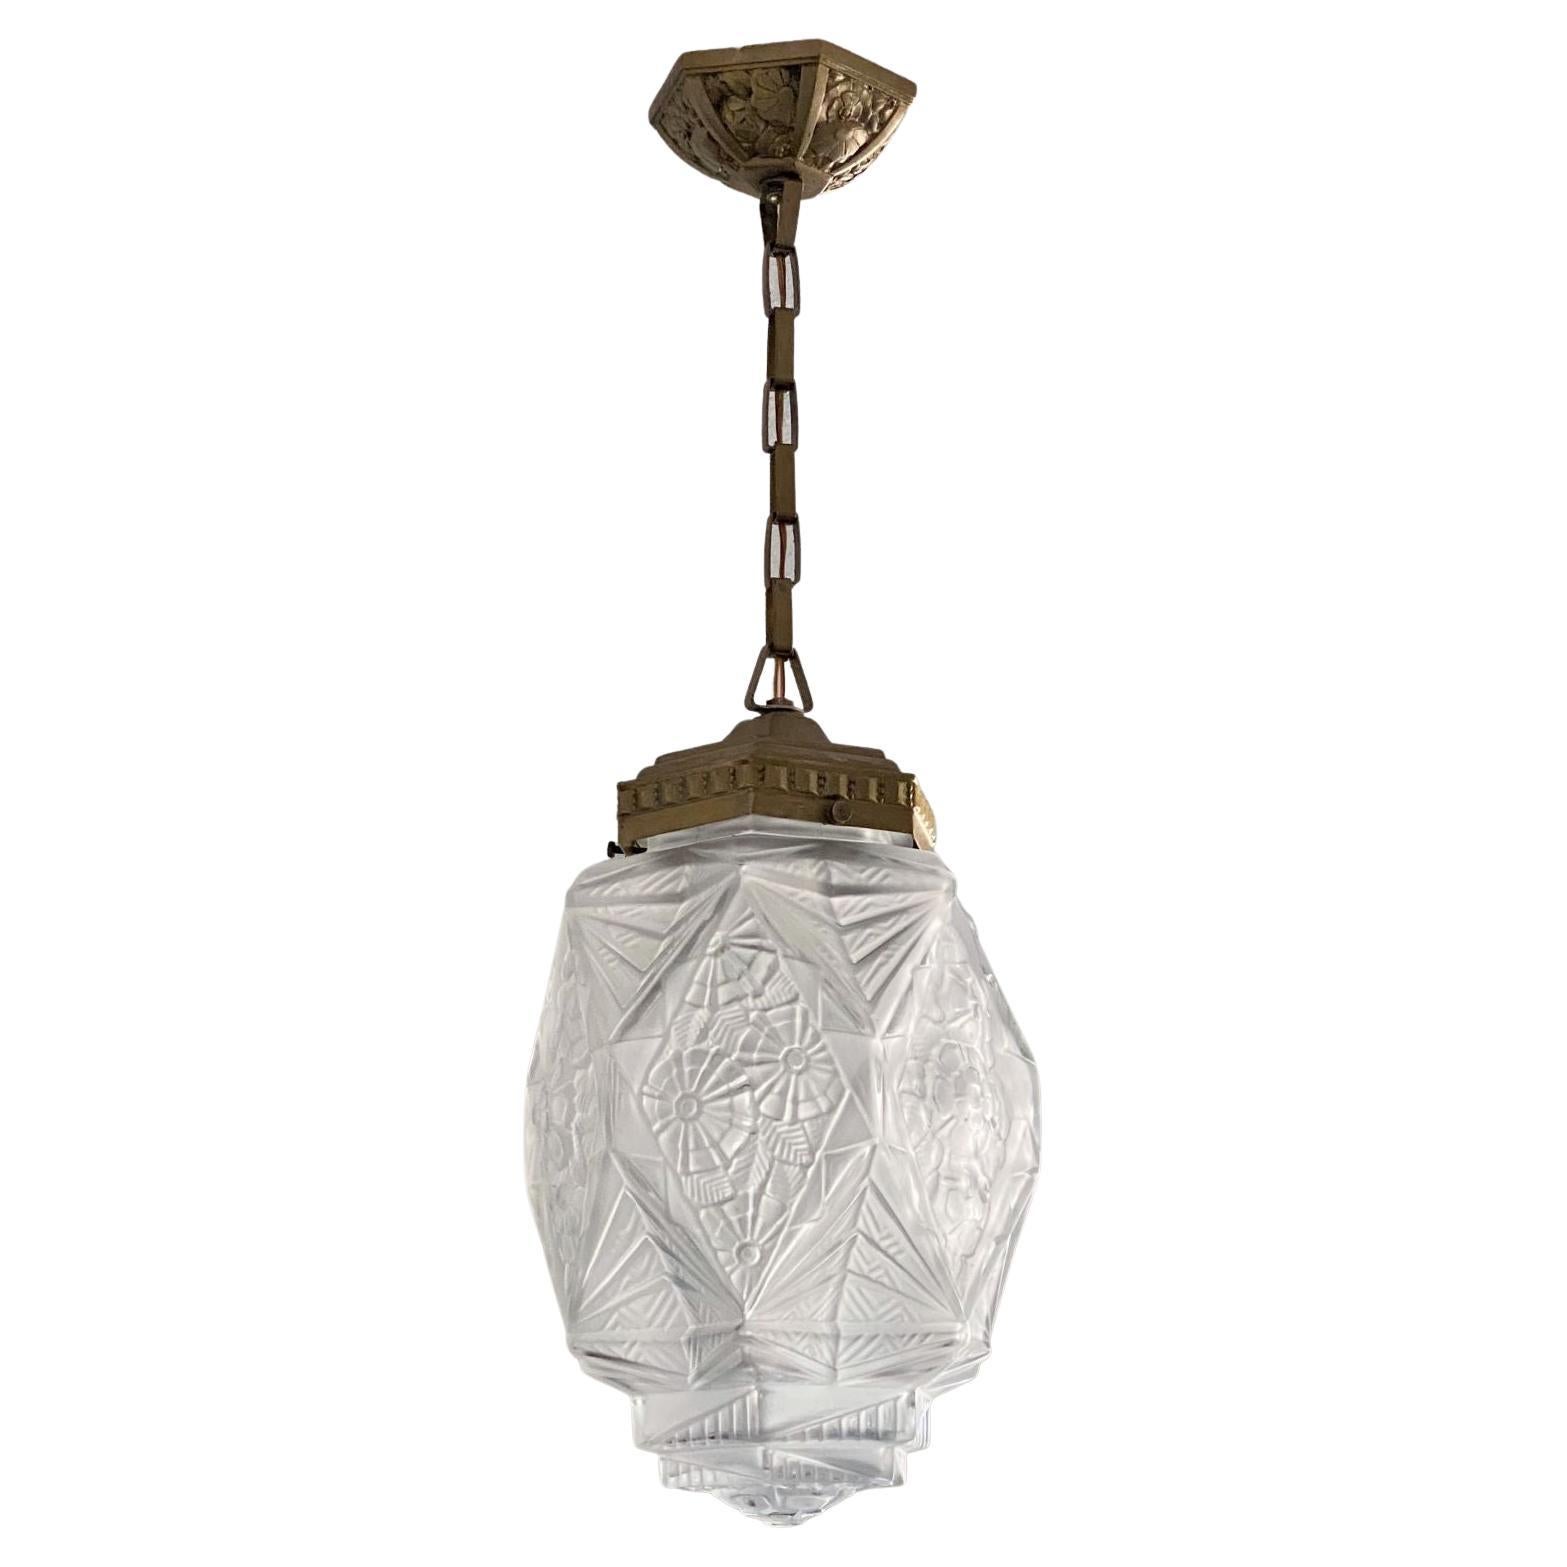 White Antique 1920's Art Deco Style Mottled Glass Ceiling Light Lamp Shade 